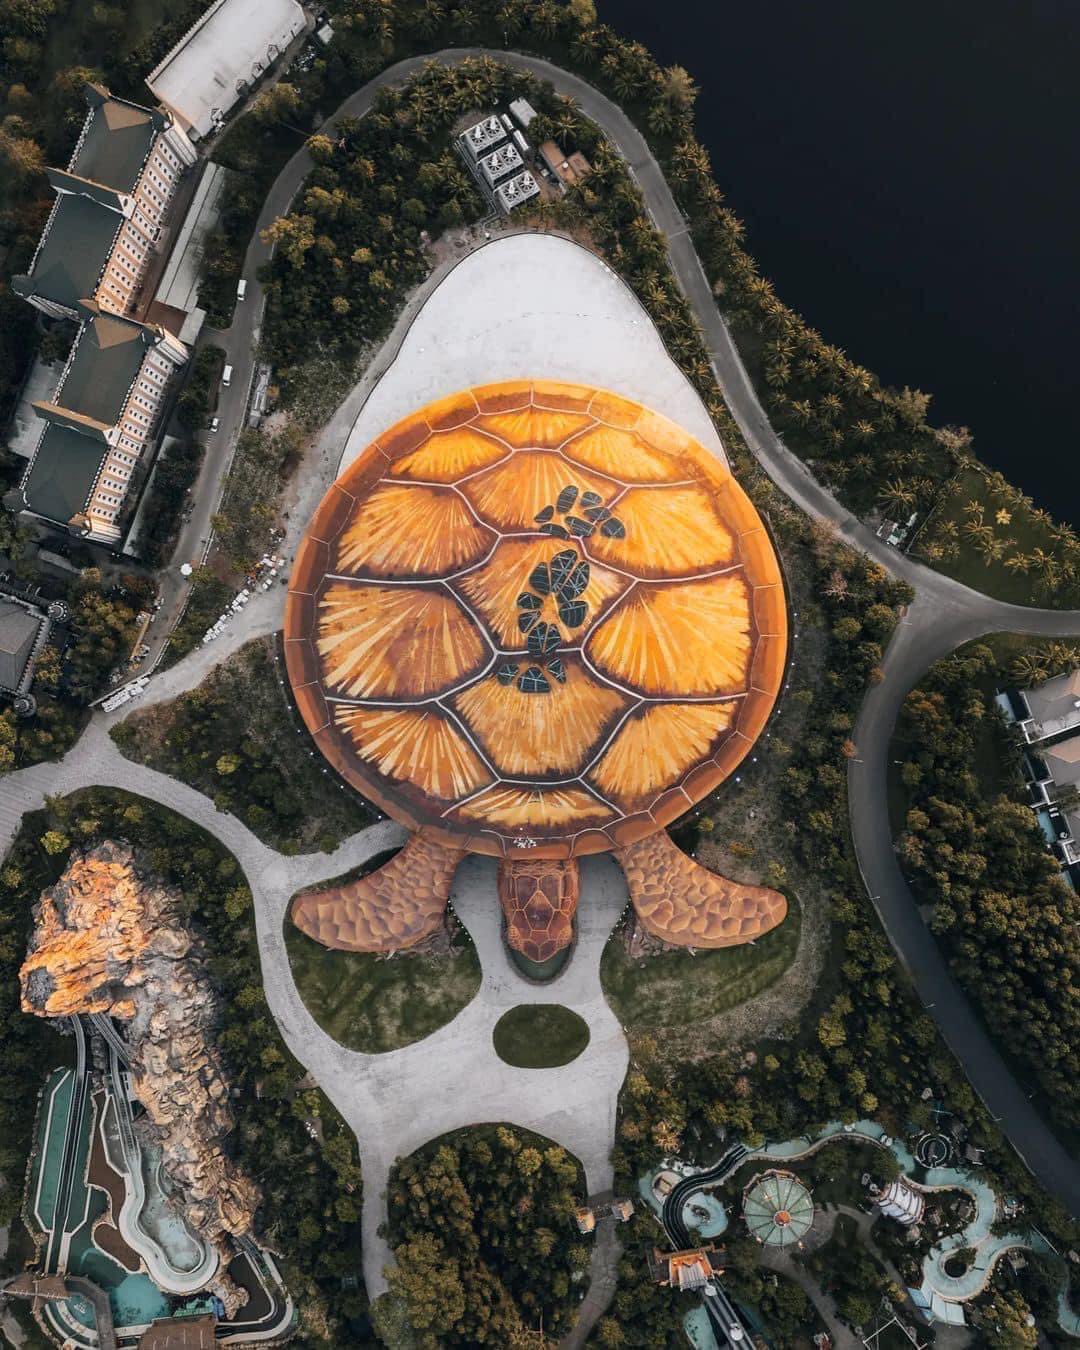 Cung điện Hải Vương, địa điểm vui chơi mới ở VinWonders Phú Quốc